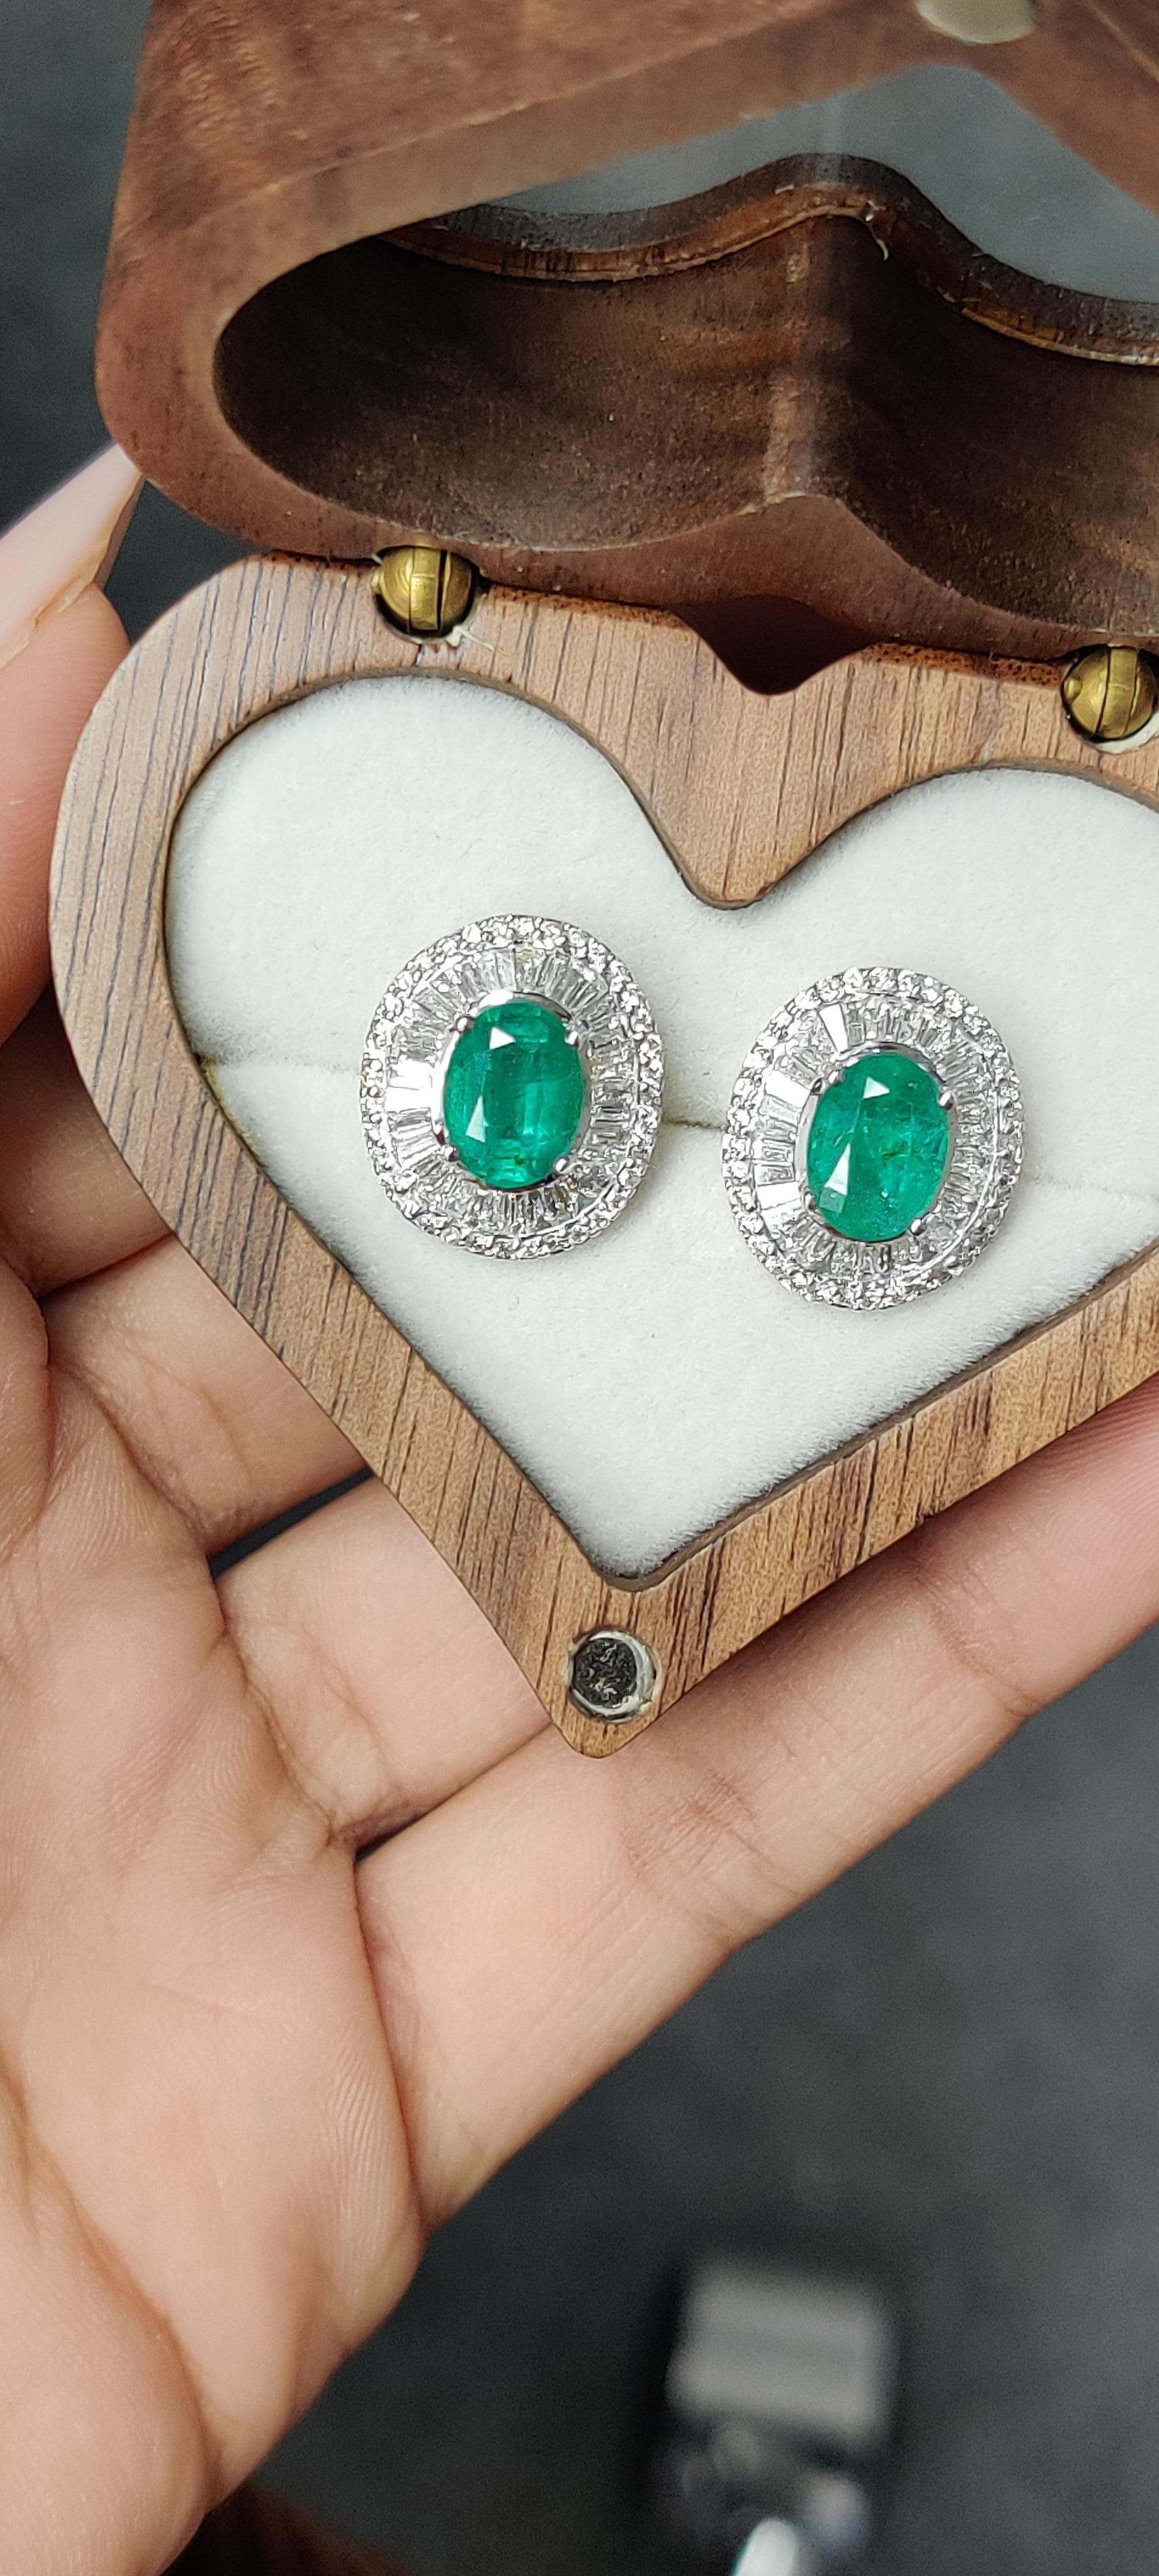 Ein äußerst reizvolles und klassisches Schmuckpaar mit diesen exquisiten und eleganten Smaragd-Ohrringen. Die Smaragde sind oval geschliffen und haben ein Gesamtgewicht von 2,77 Karat.

Die Smaragde haben eine kostbare, leuchtend grüne Farbe und